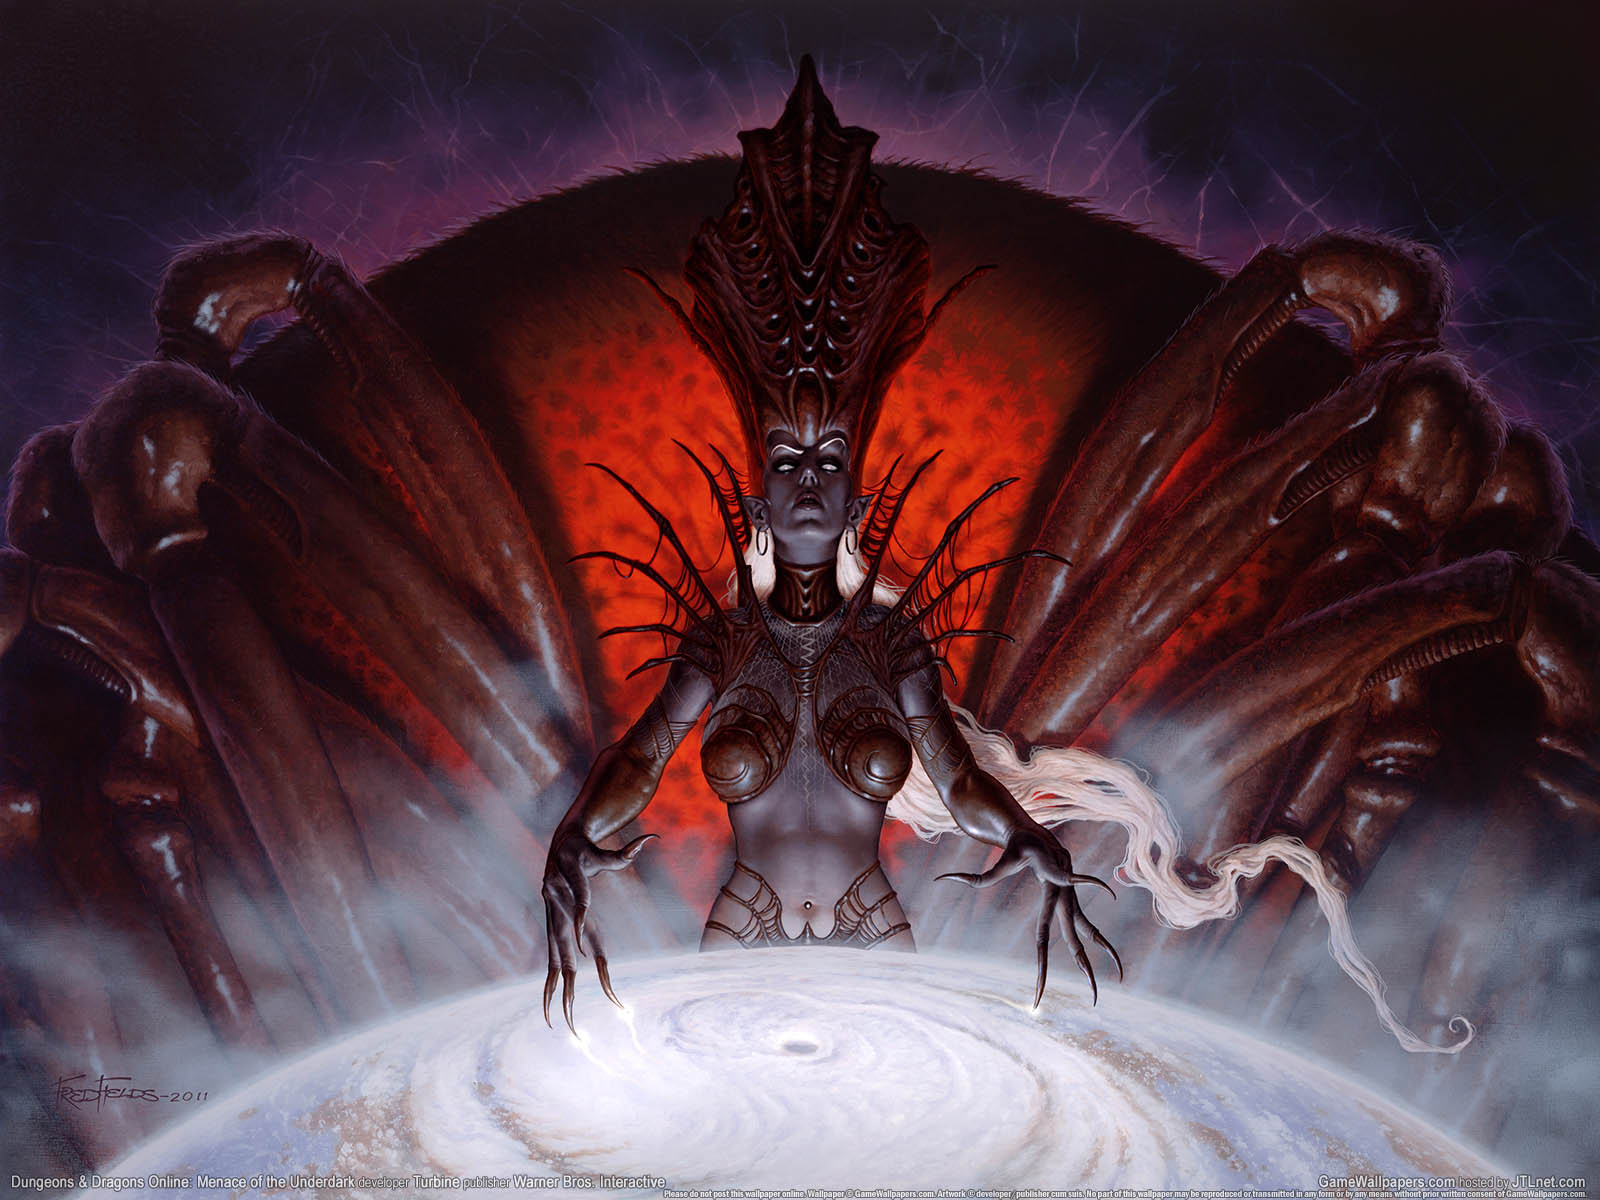 Dungeons & Dragons Online: Menace of the Underdark achtergrond 01 1600x1200